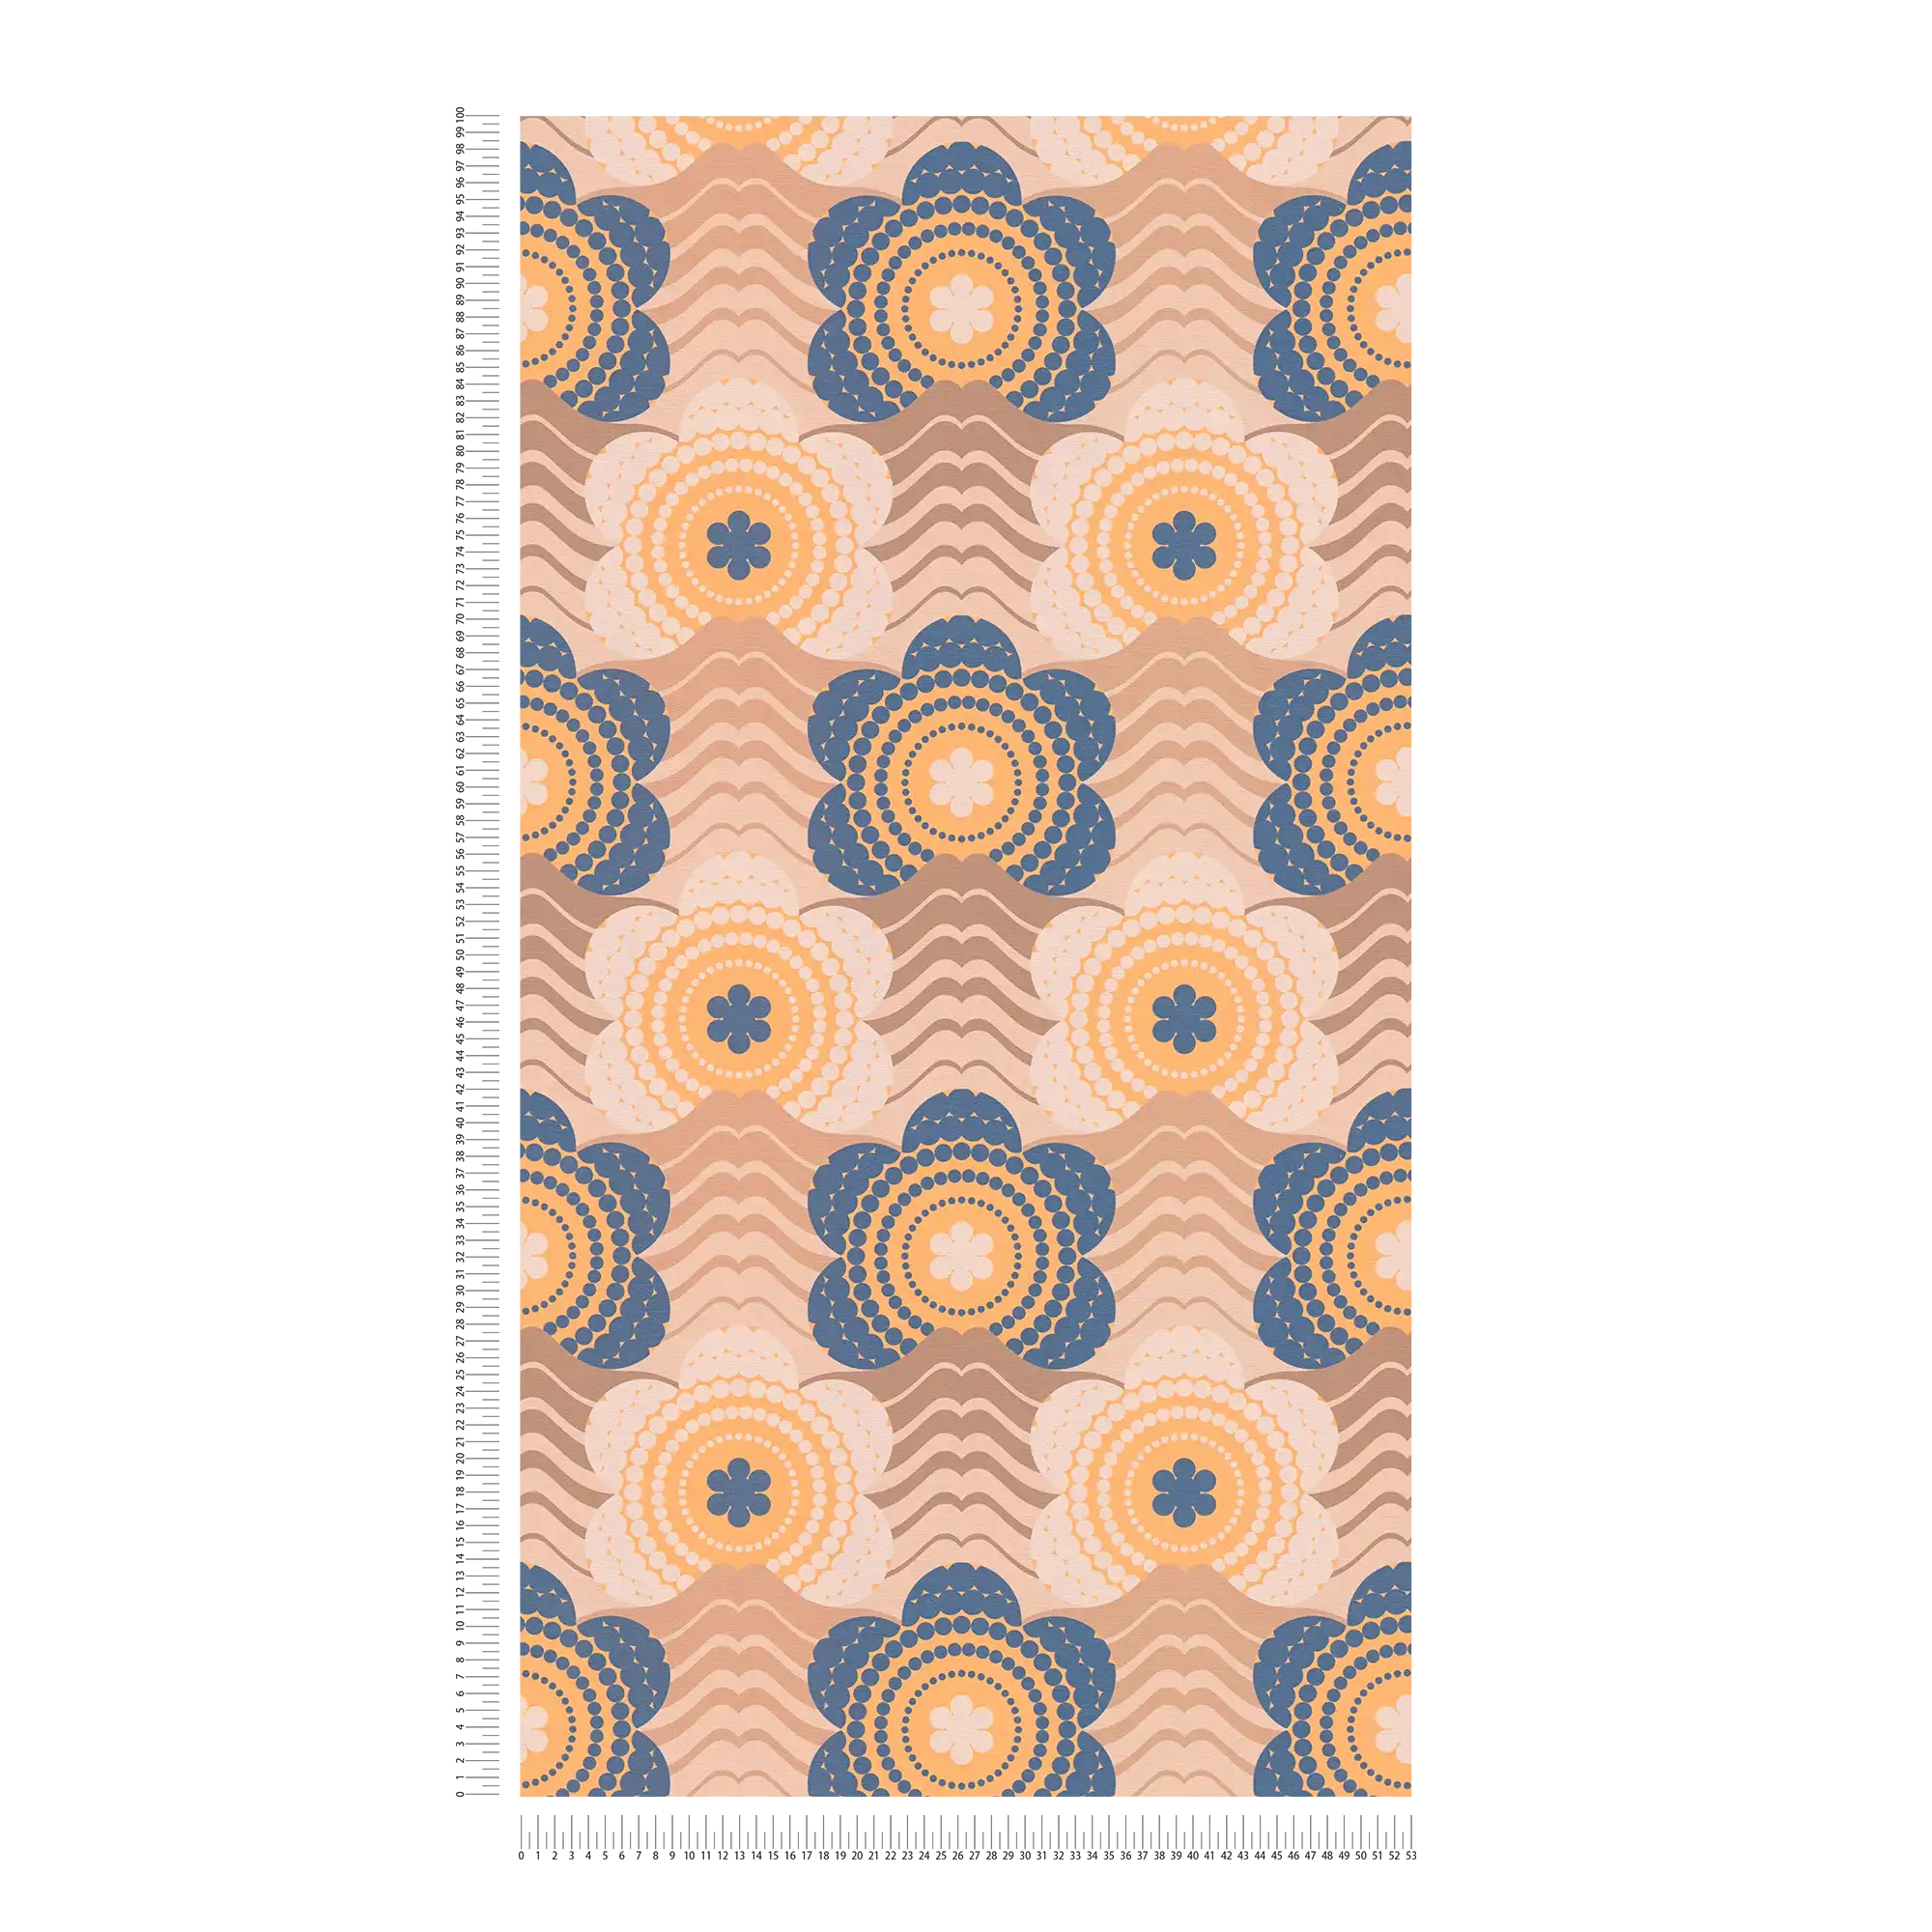             papier peint en papier légèrement structuré avec motifs de vagues et de fleurs - beige, marron, bleu
        